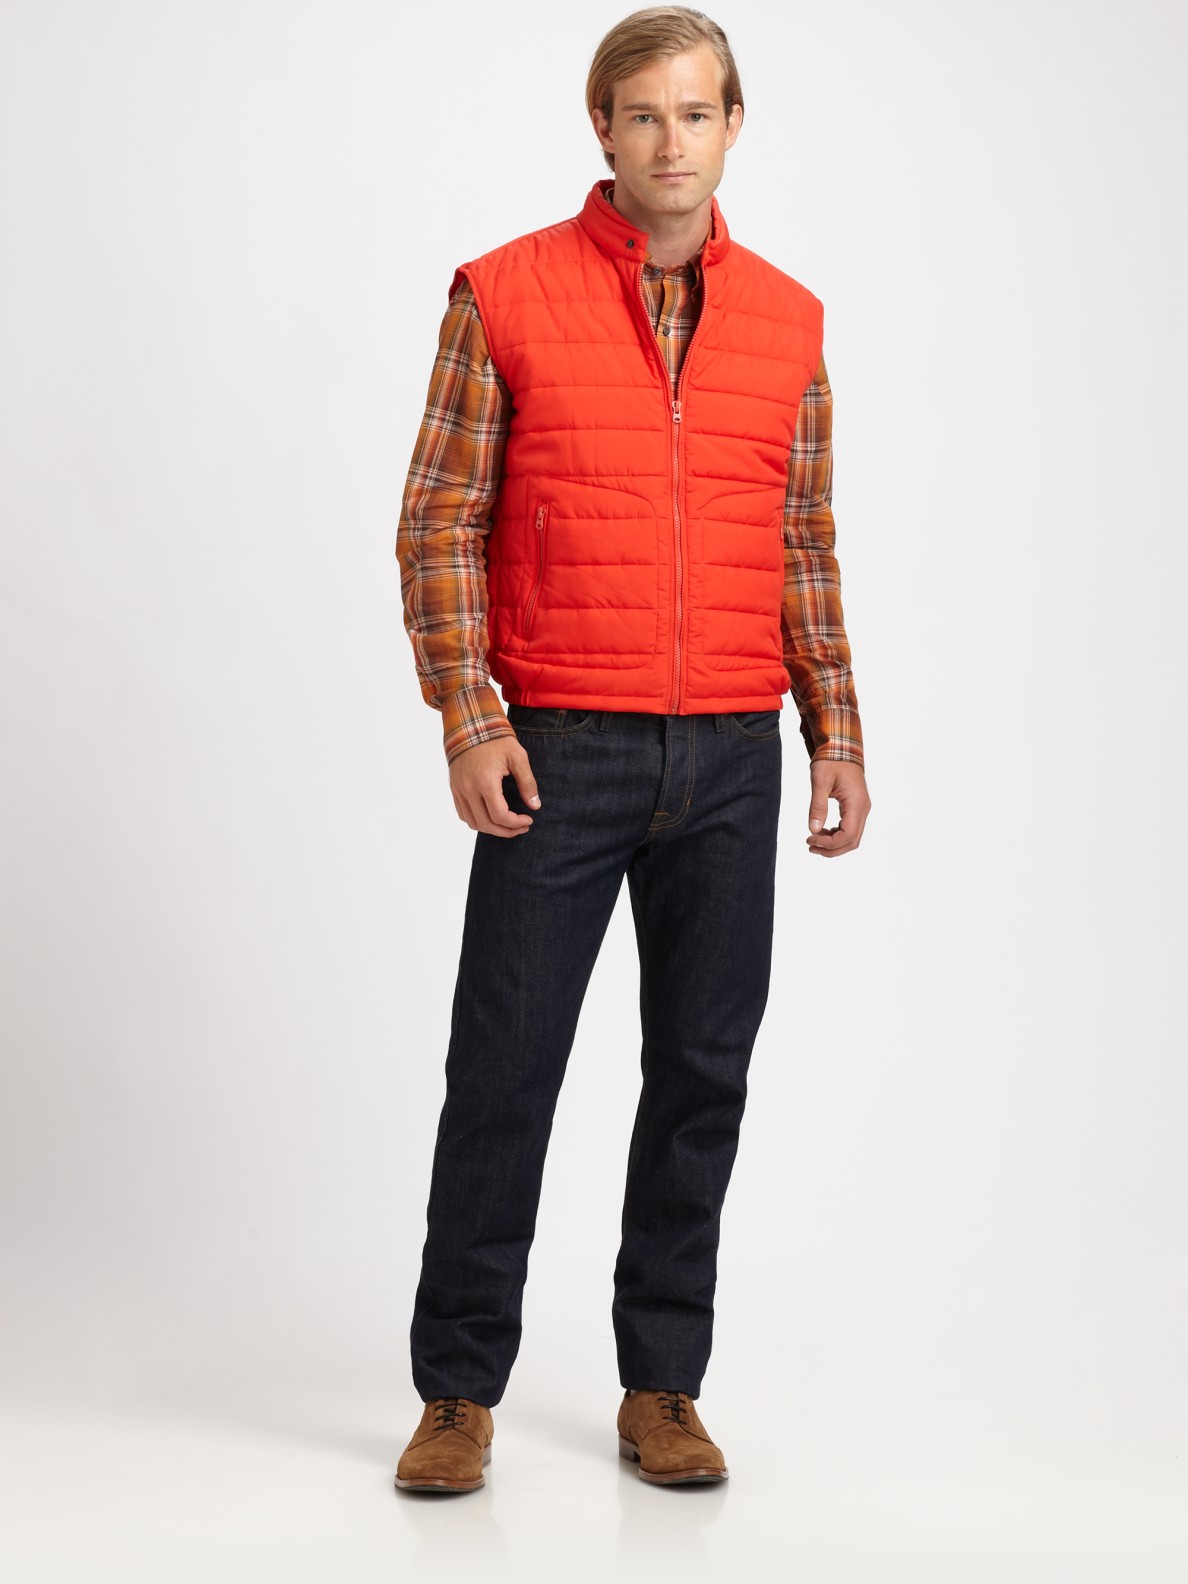 Vince Nylon Puffer Vest in Orange for Men - Lyst